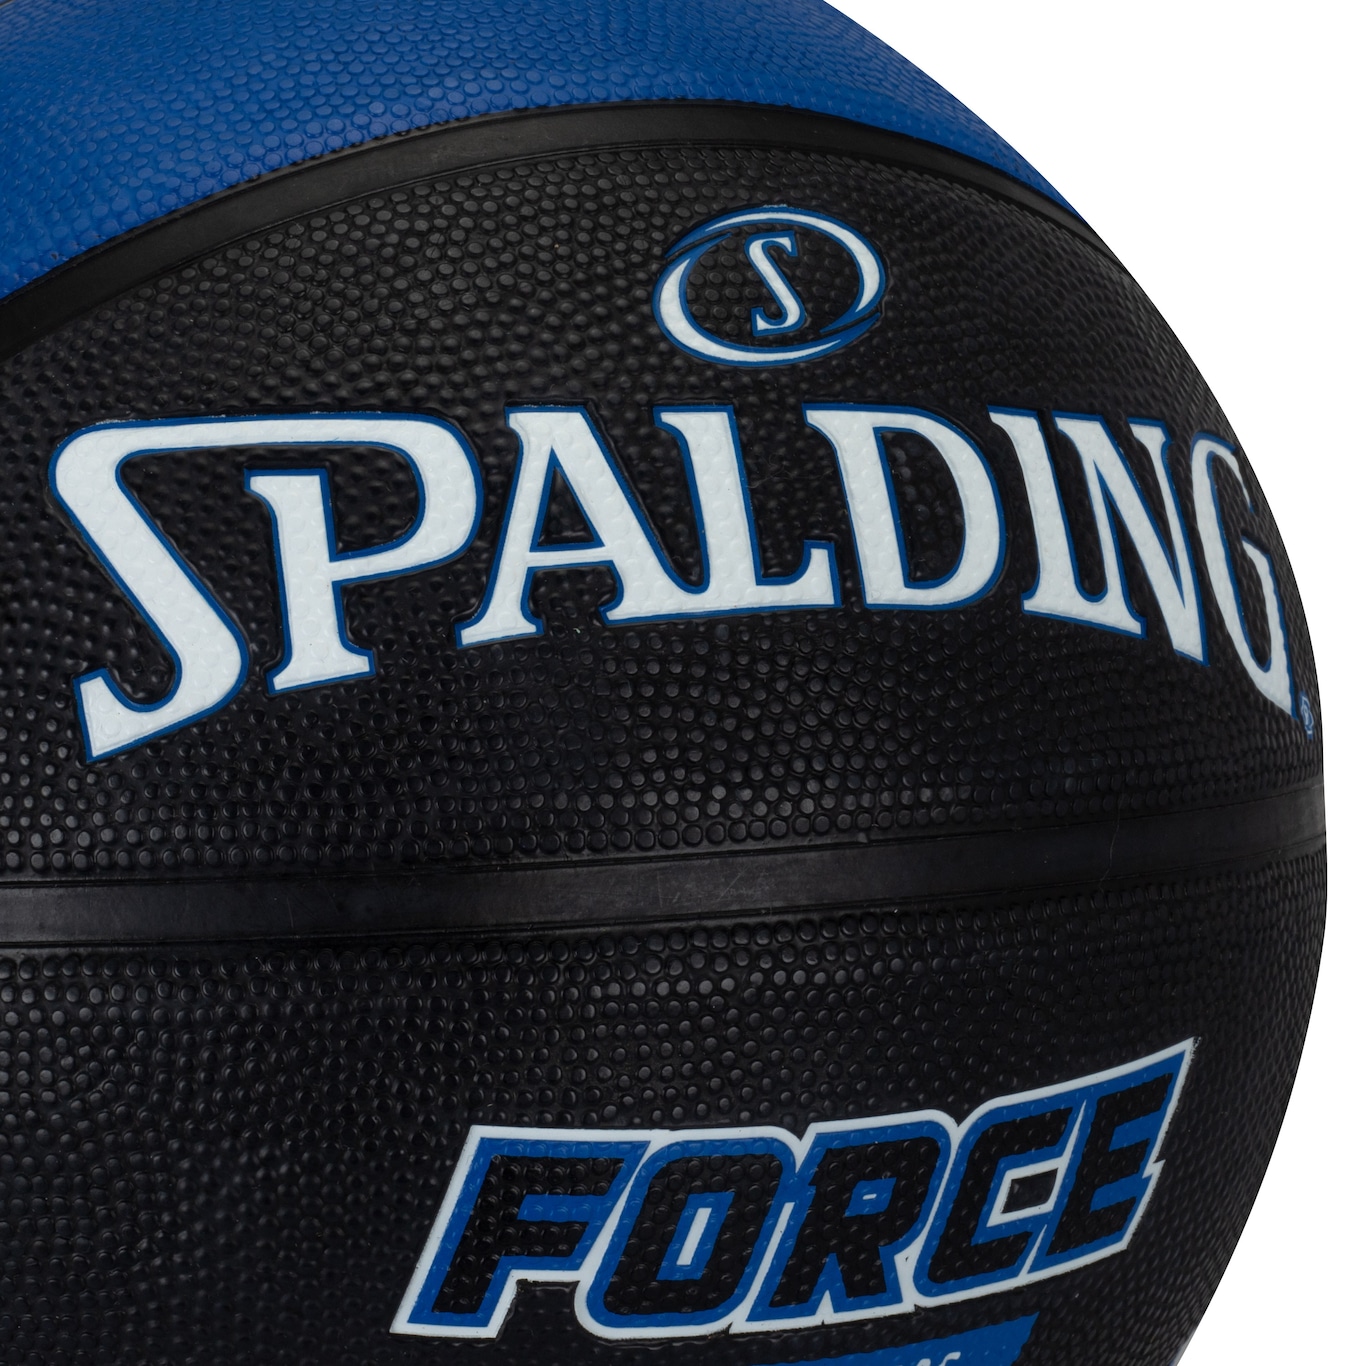 Bola de Basquete Spalding Force em Promoção